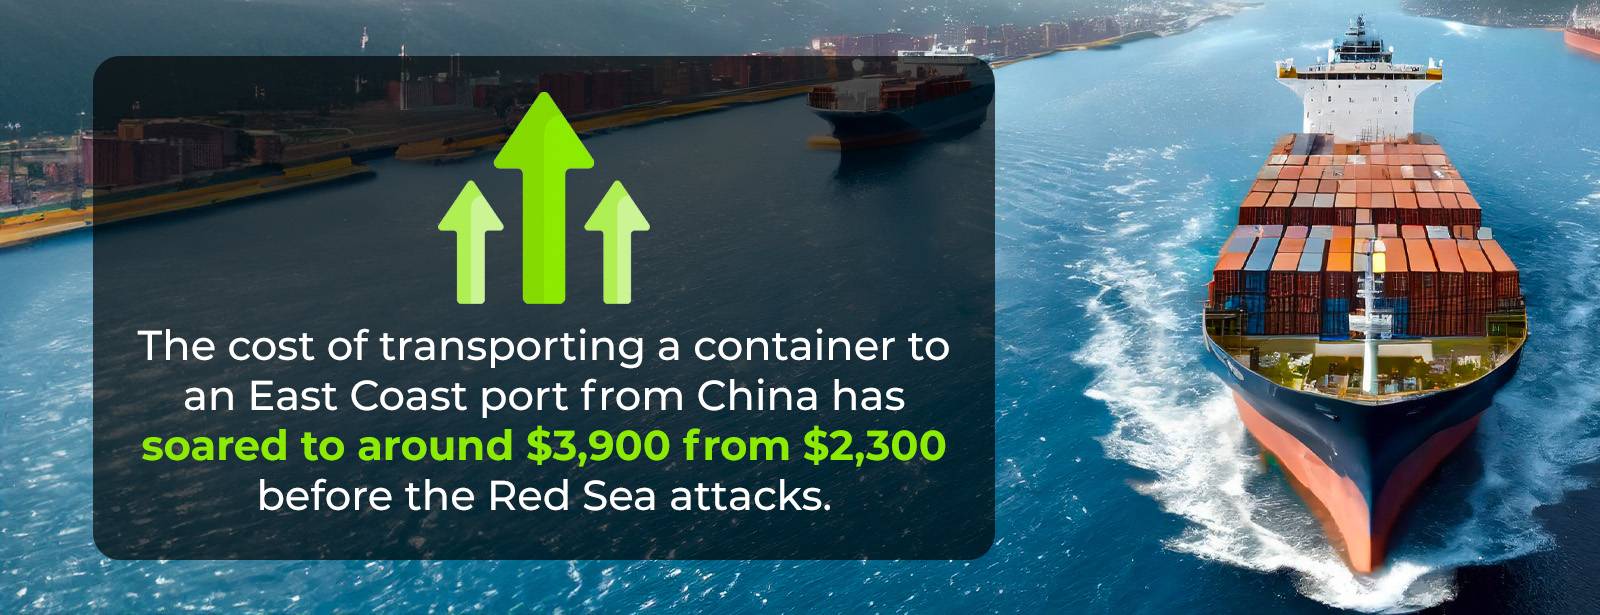 Chi phí vận chuyển một container qua Biển Đỏ tăng gấp 2 lần.